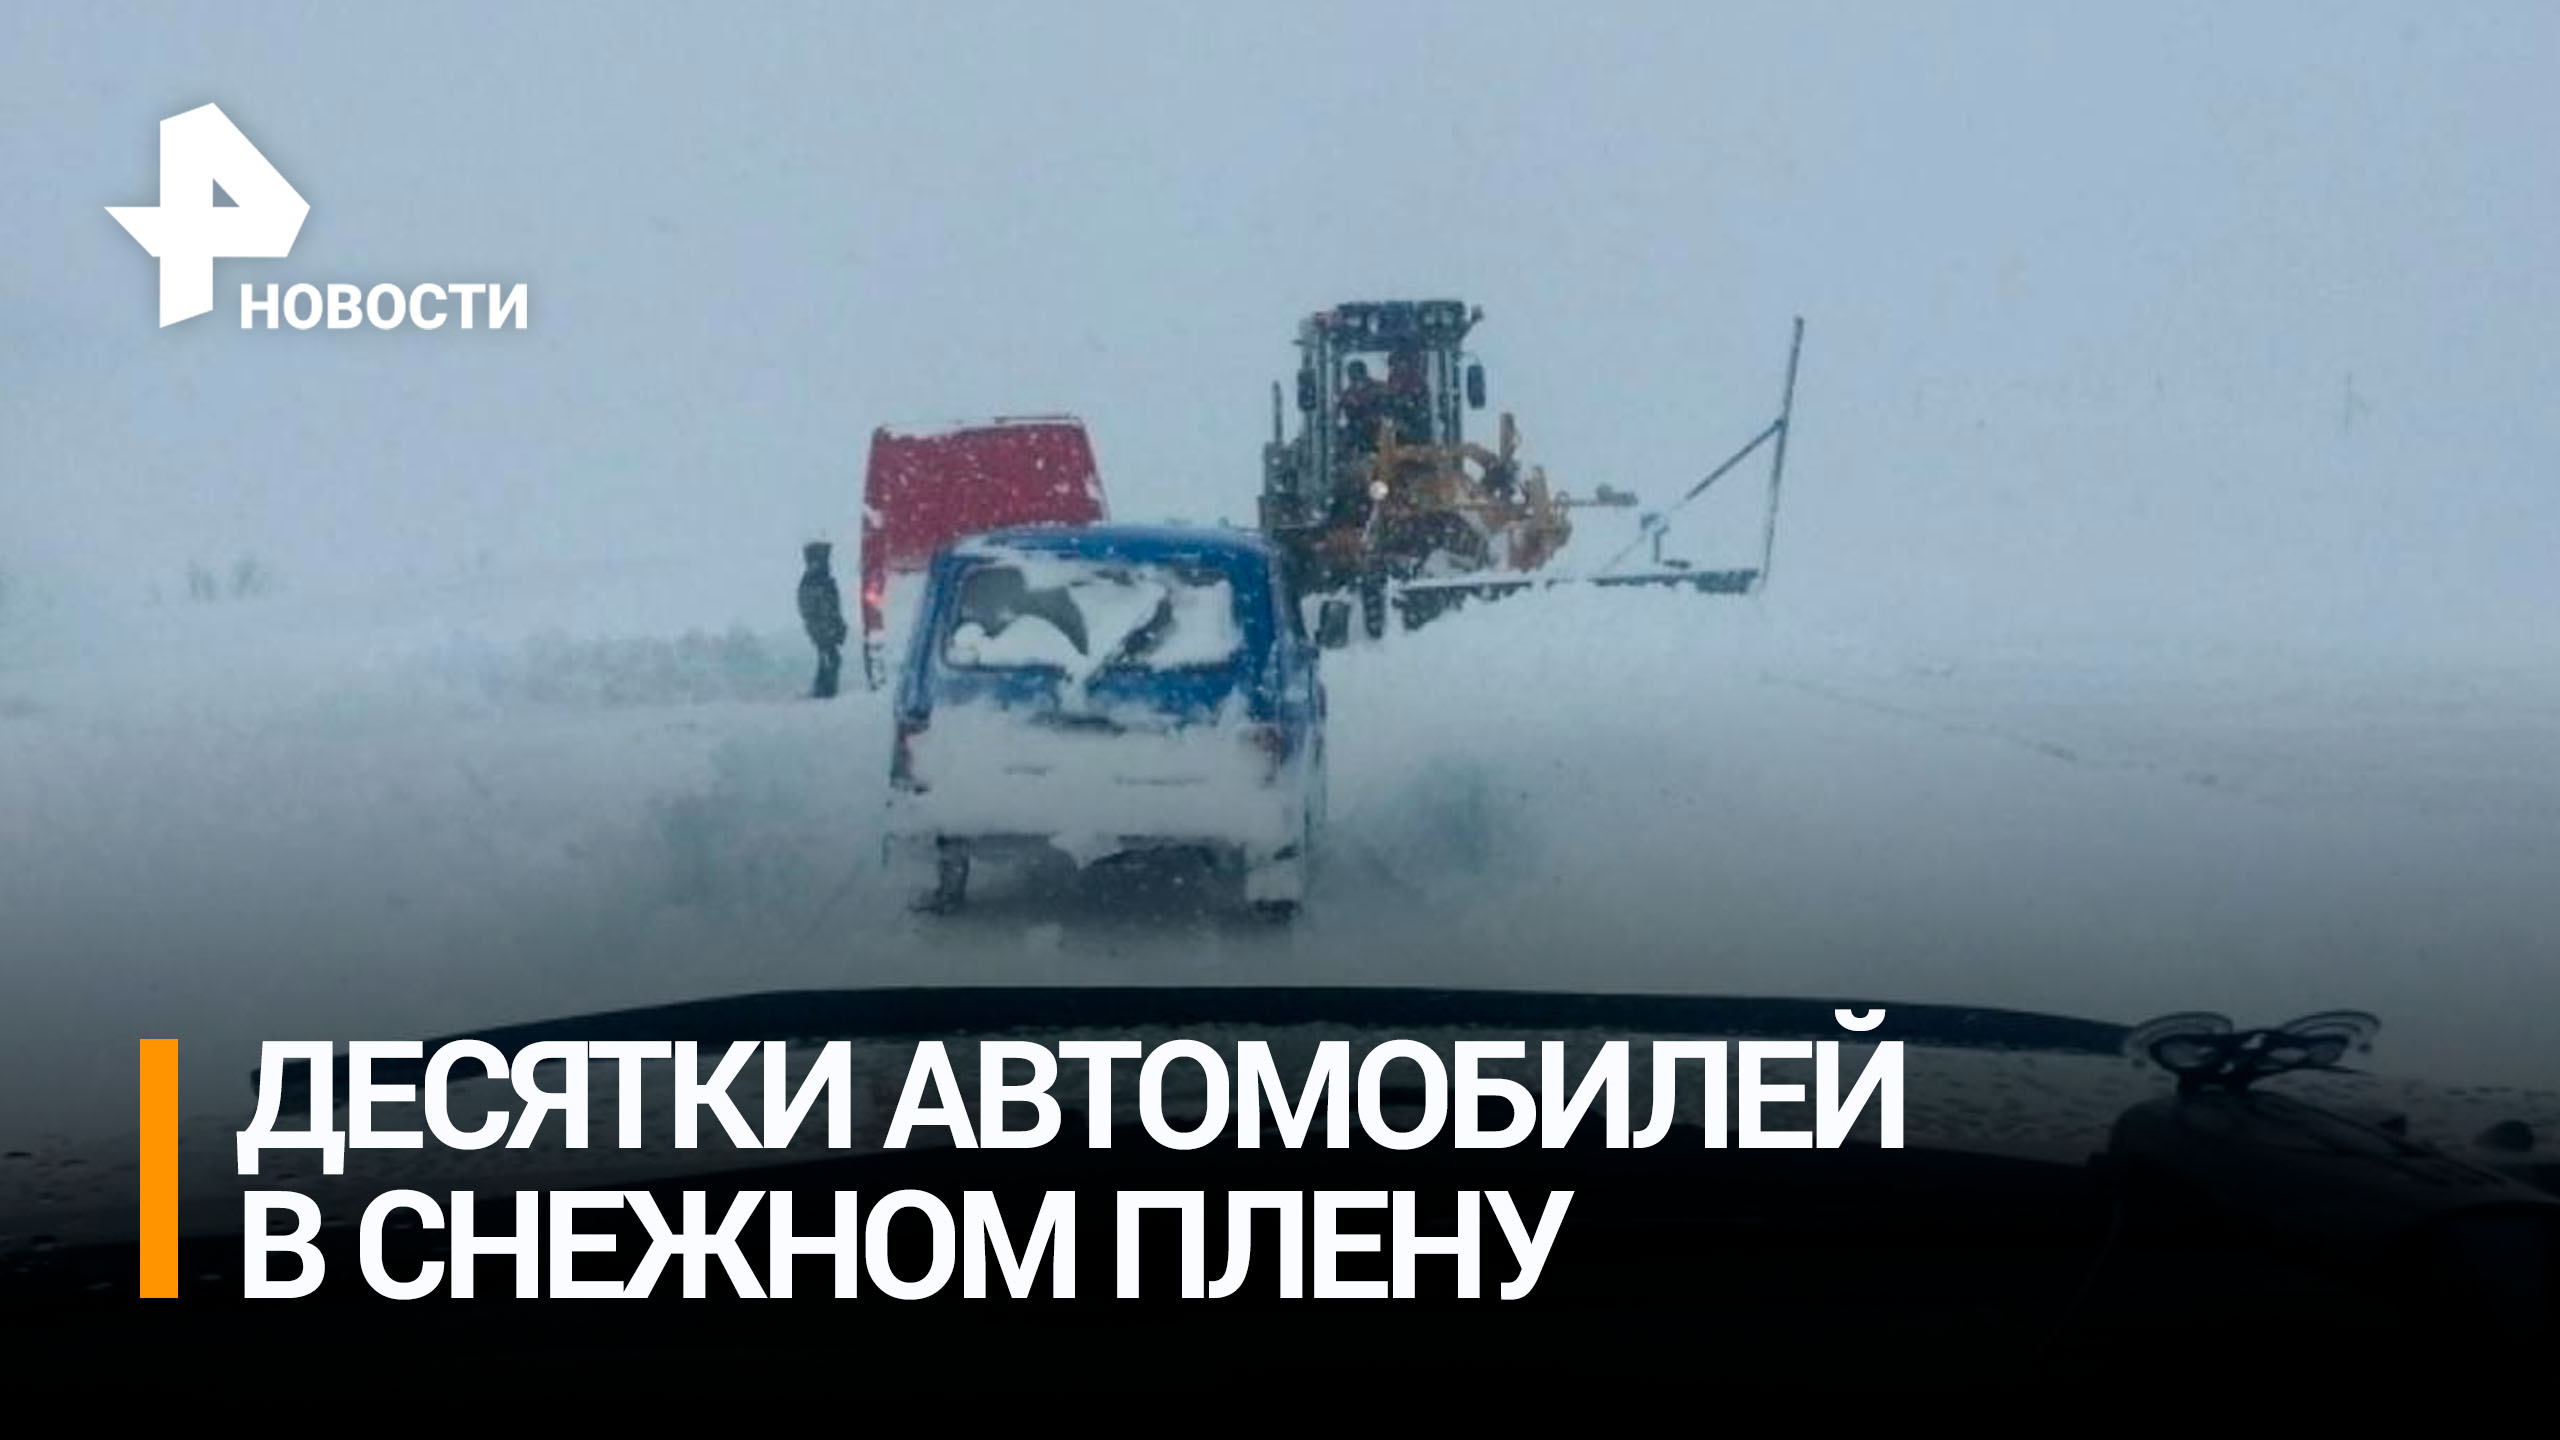 Колонна из 20 машин попала в снежную ловушку под Мурманском в районе Териберки / РЕН Новости